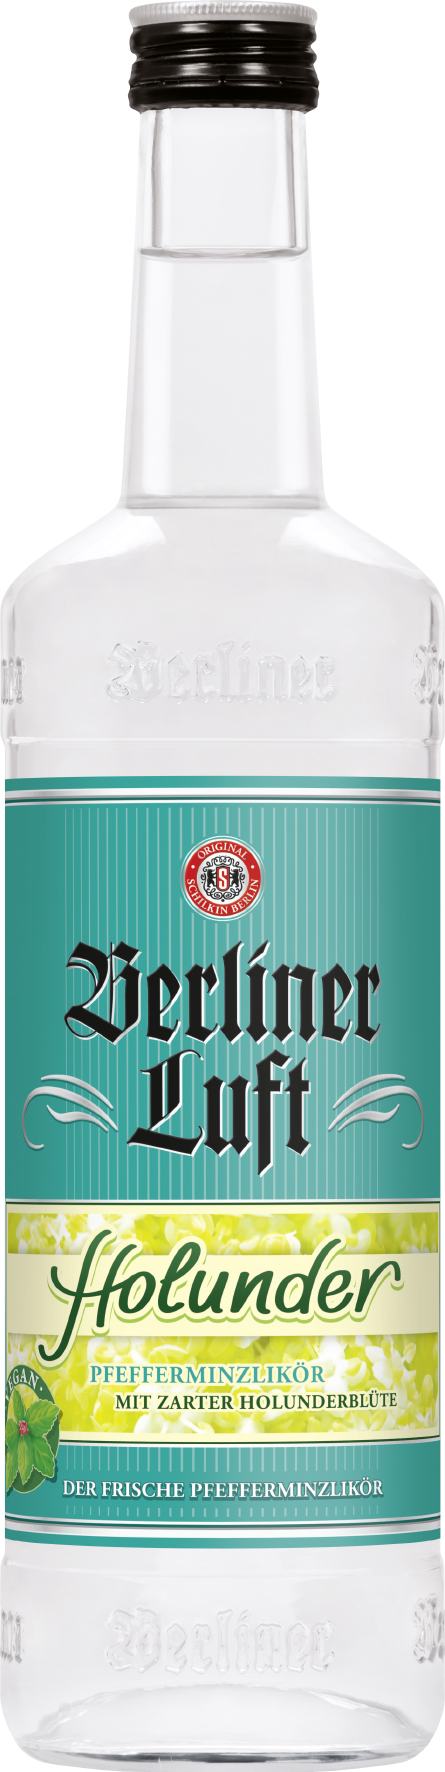 Berliner Luft Holunder - 0,7L 18% vol